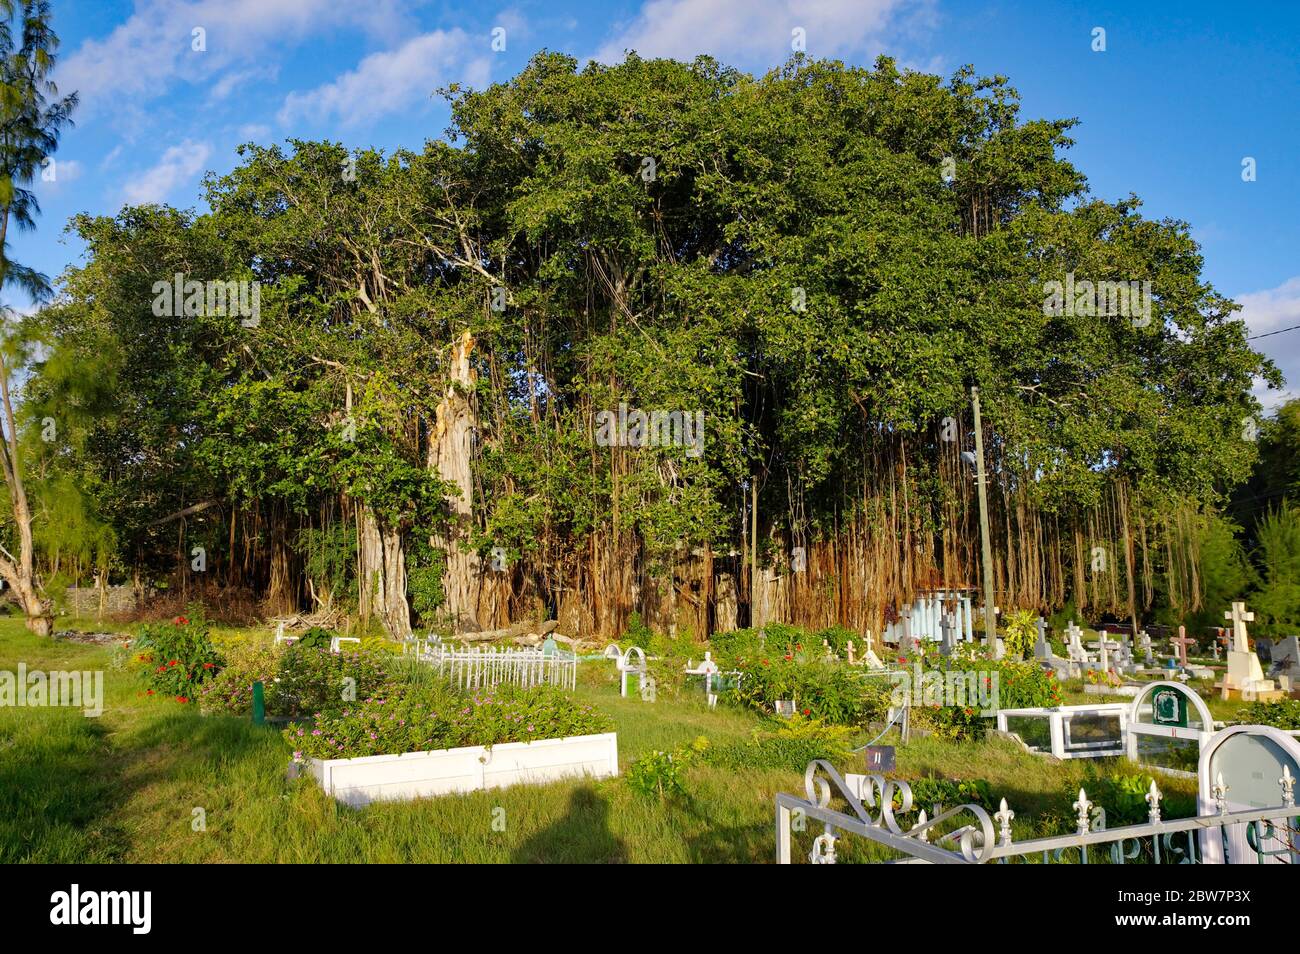 CAP MALHEUREUX / MAURICE - 13 AOÛT 2018 : cimetière traditionnel sur la côte du Cap Malheureux, île Maurice Banque D'Images